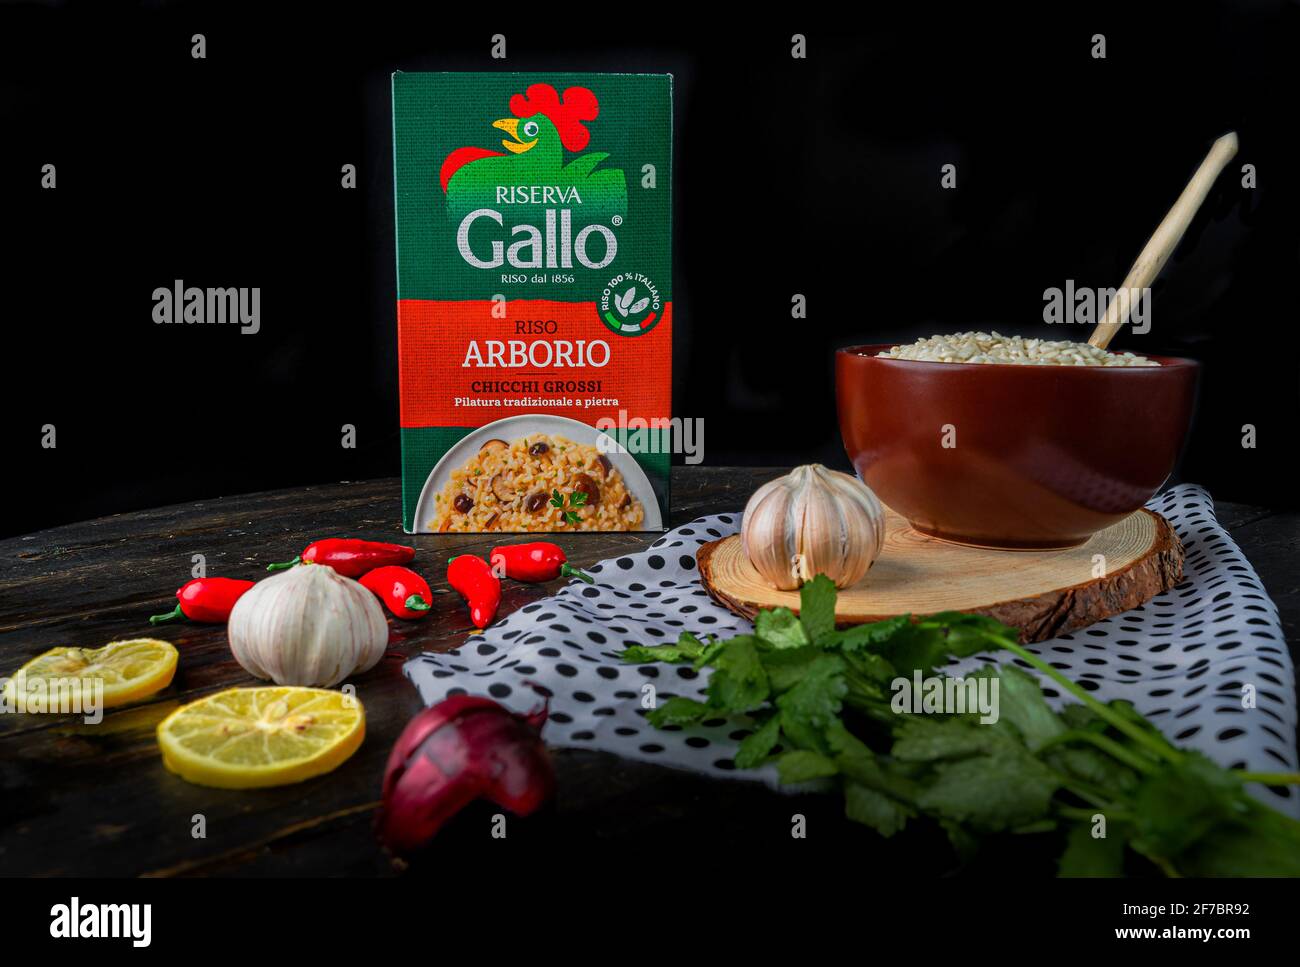 Closeup of packet italian riso arborio rice. Brand name Riserva GALLO Stock Photo